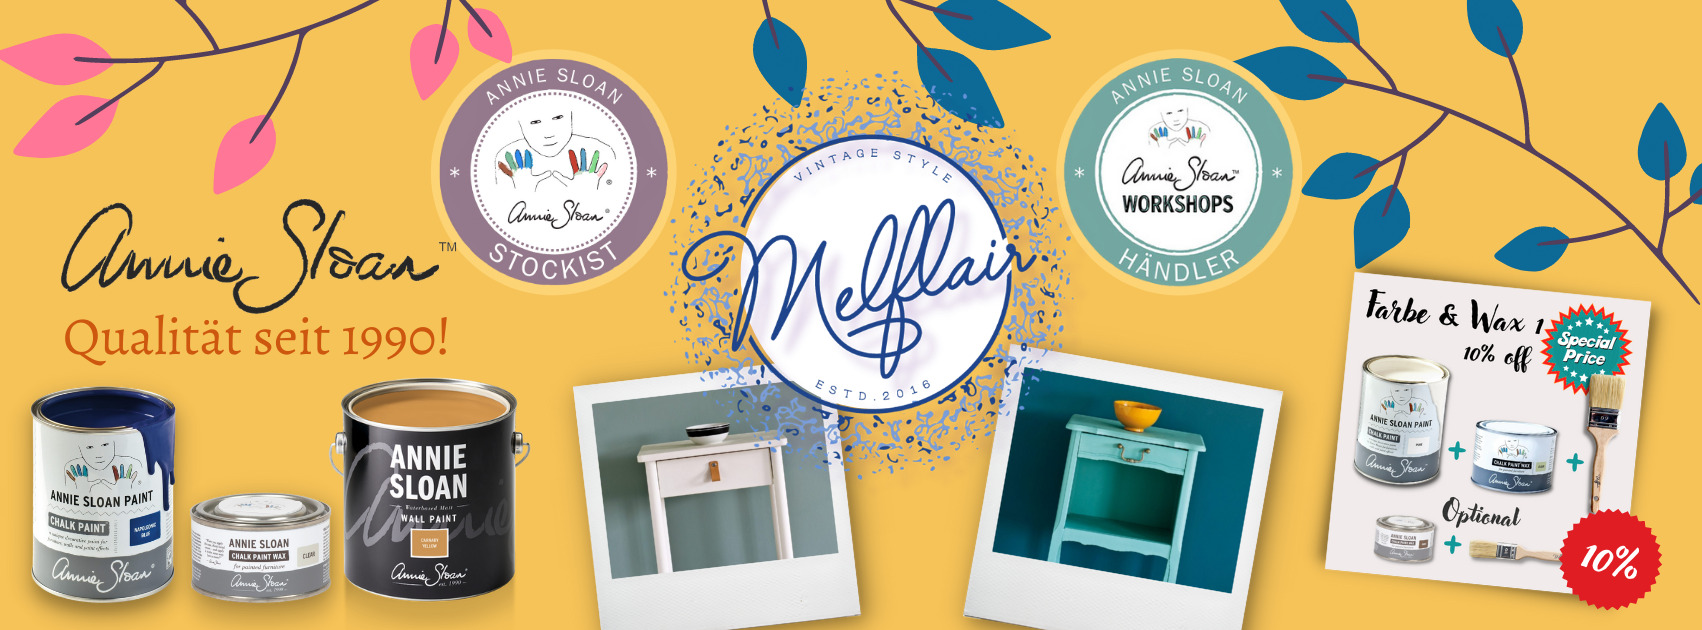 Melflair Banner Startseite mit Melflair Logo, Annie Sloan Produkten und Beispielbildern